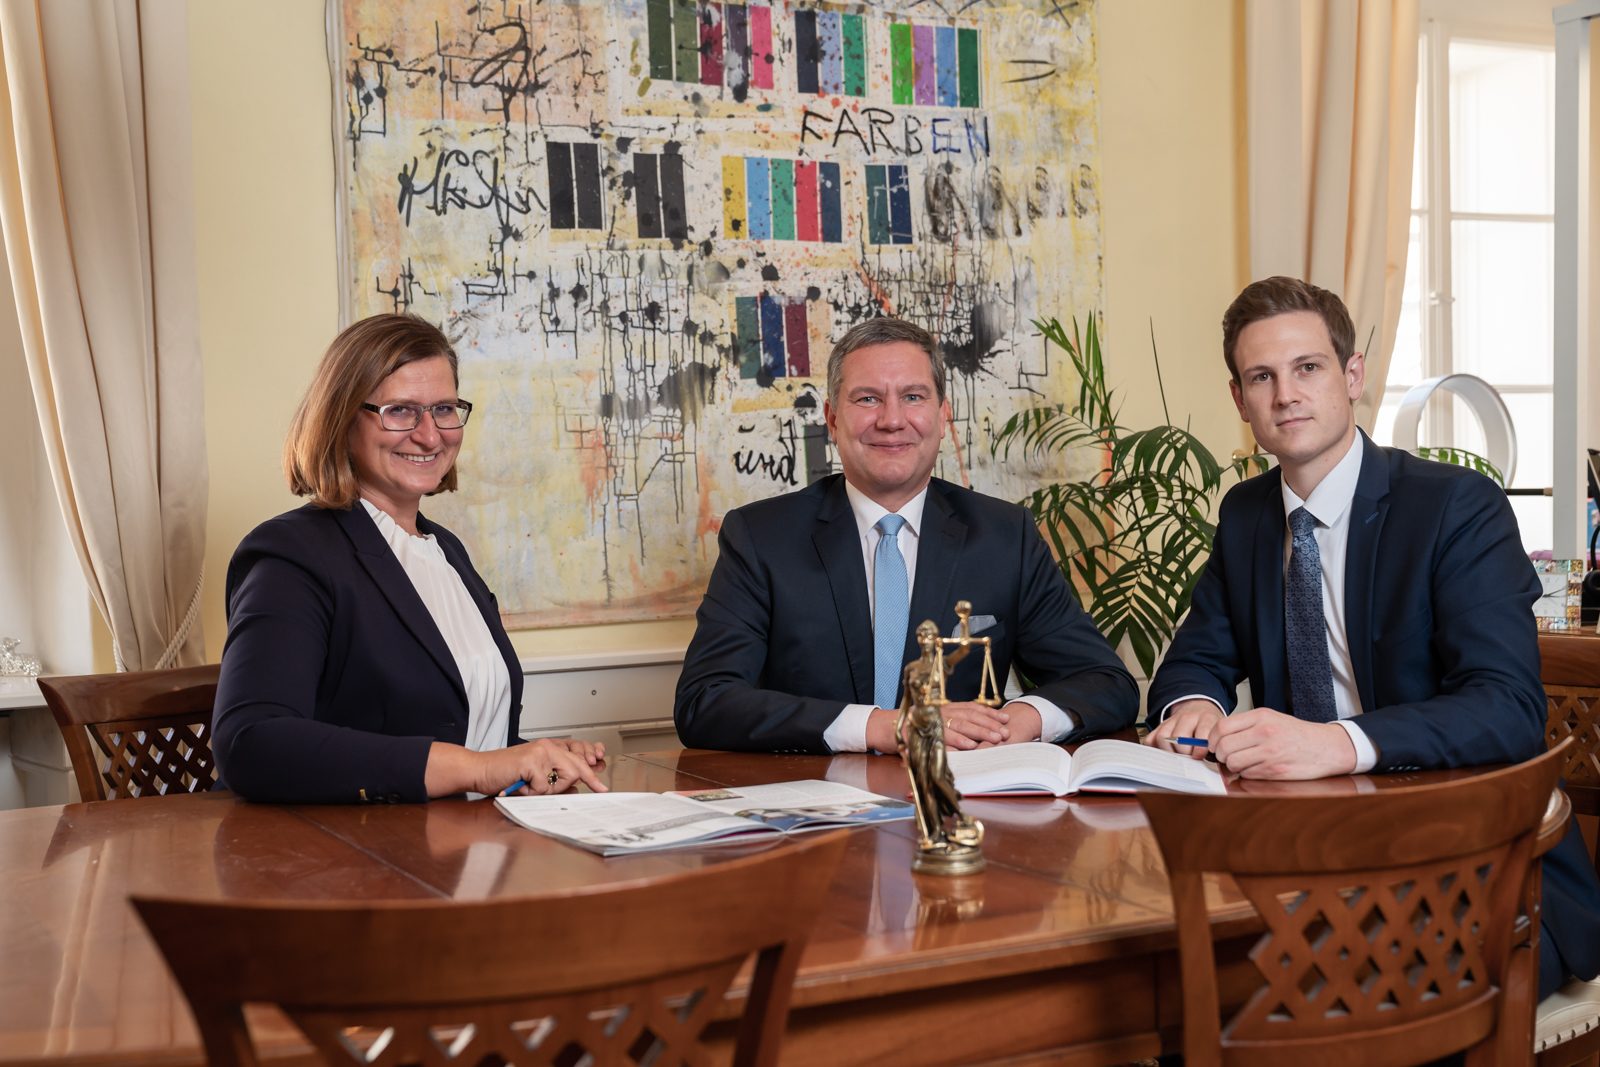 Teambild von den juristischen Teammitgliedern: Mag. Klaus Schöffmann Notar, Dr. Bettina Piber Notarsubstitutin, Mag. Hannes Plieschnegger Notarsubstitut